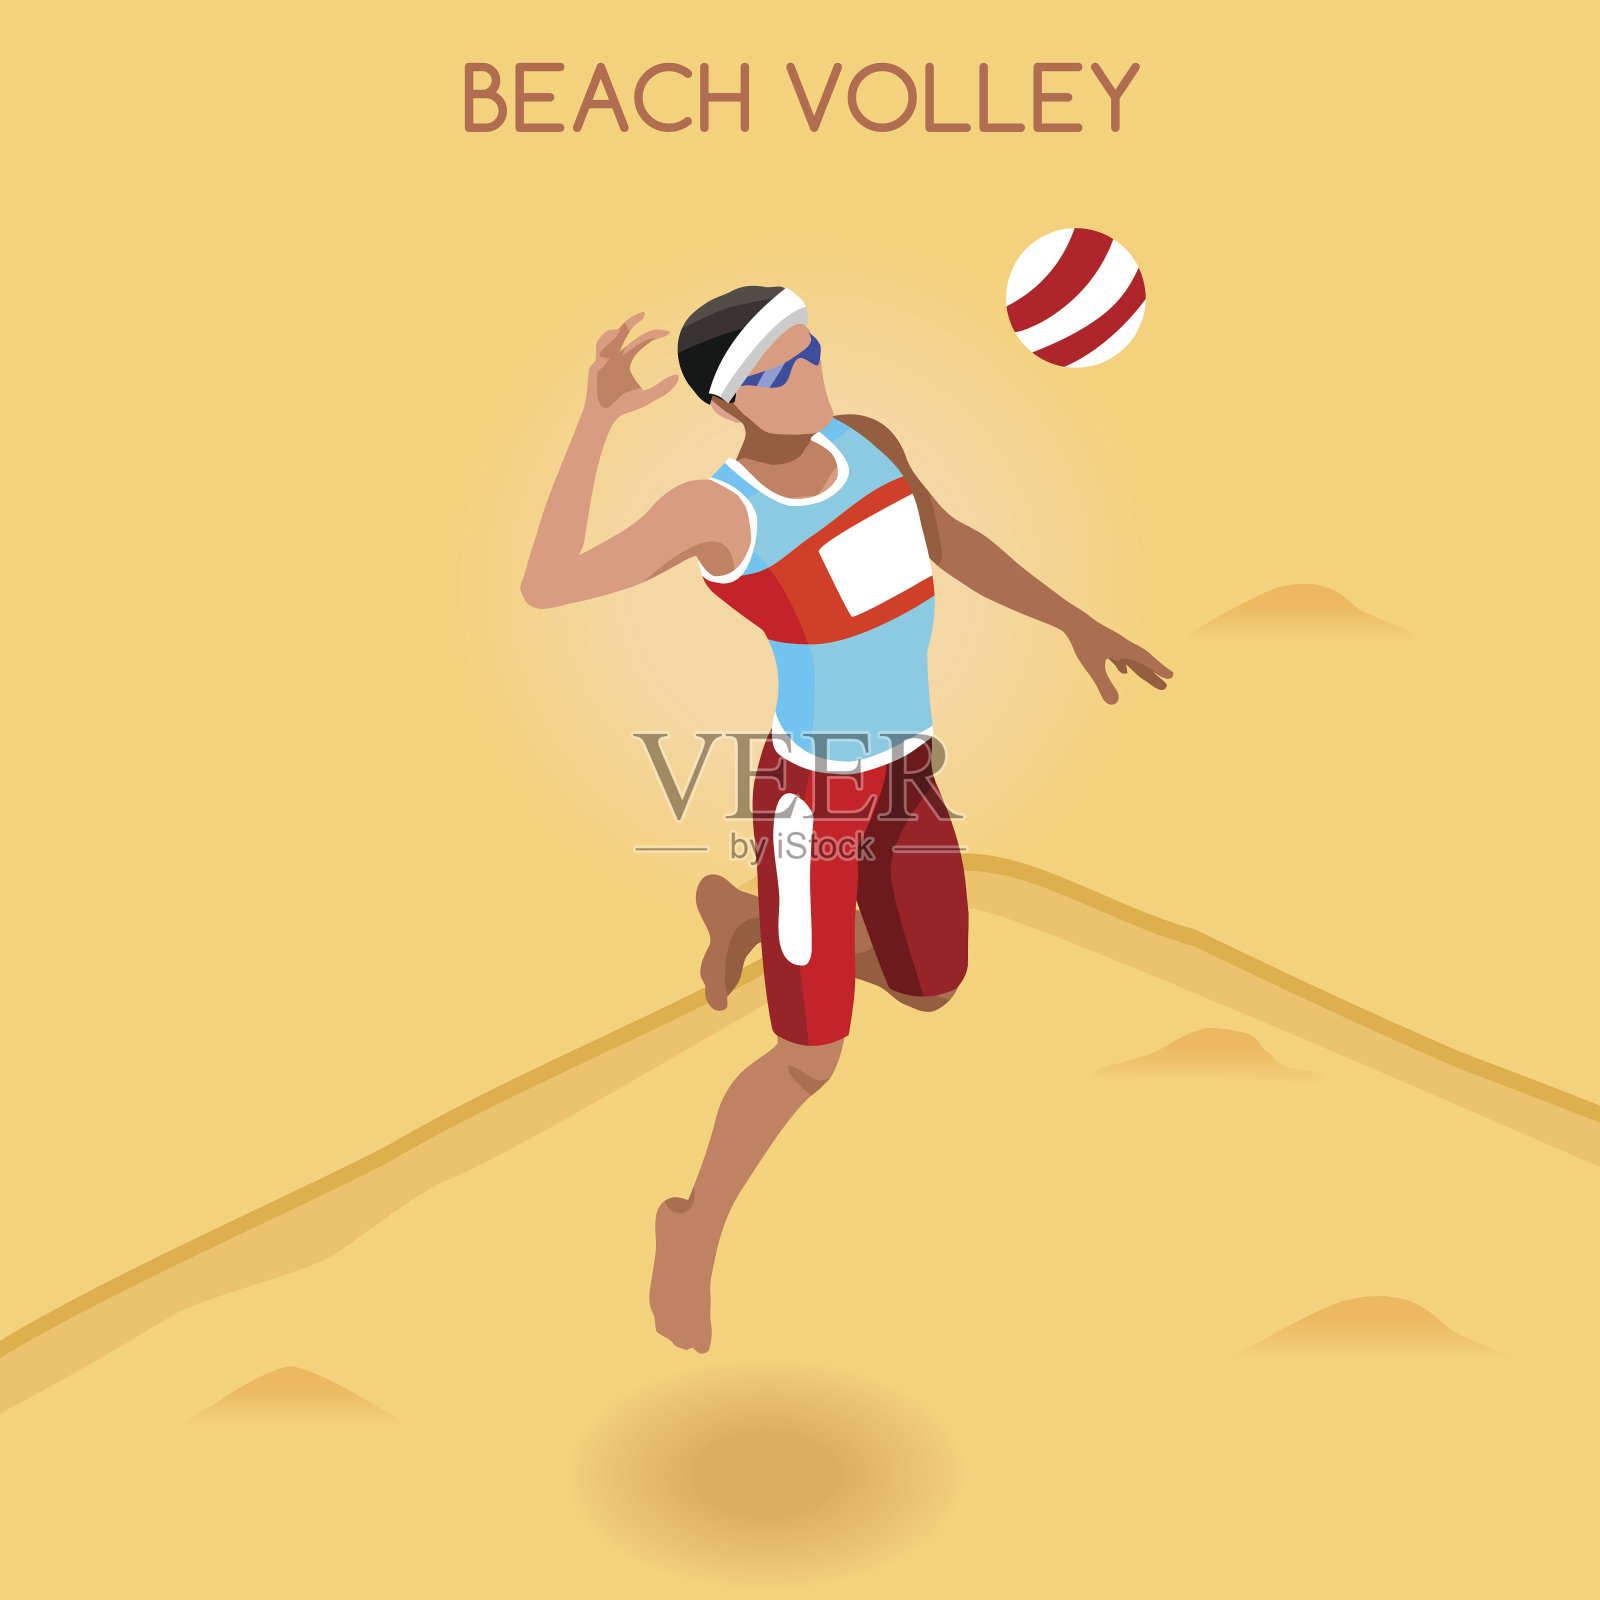 田径、沙滩排球、运动员比赛、运动员、体育锦标赛、国际比赛插画图片素材